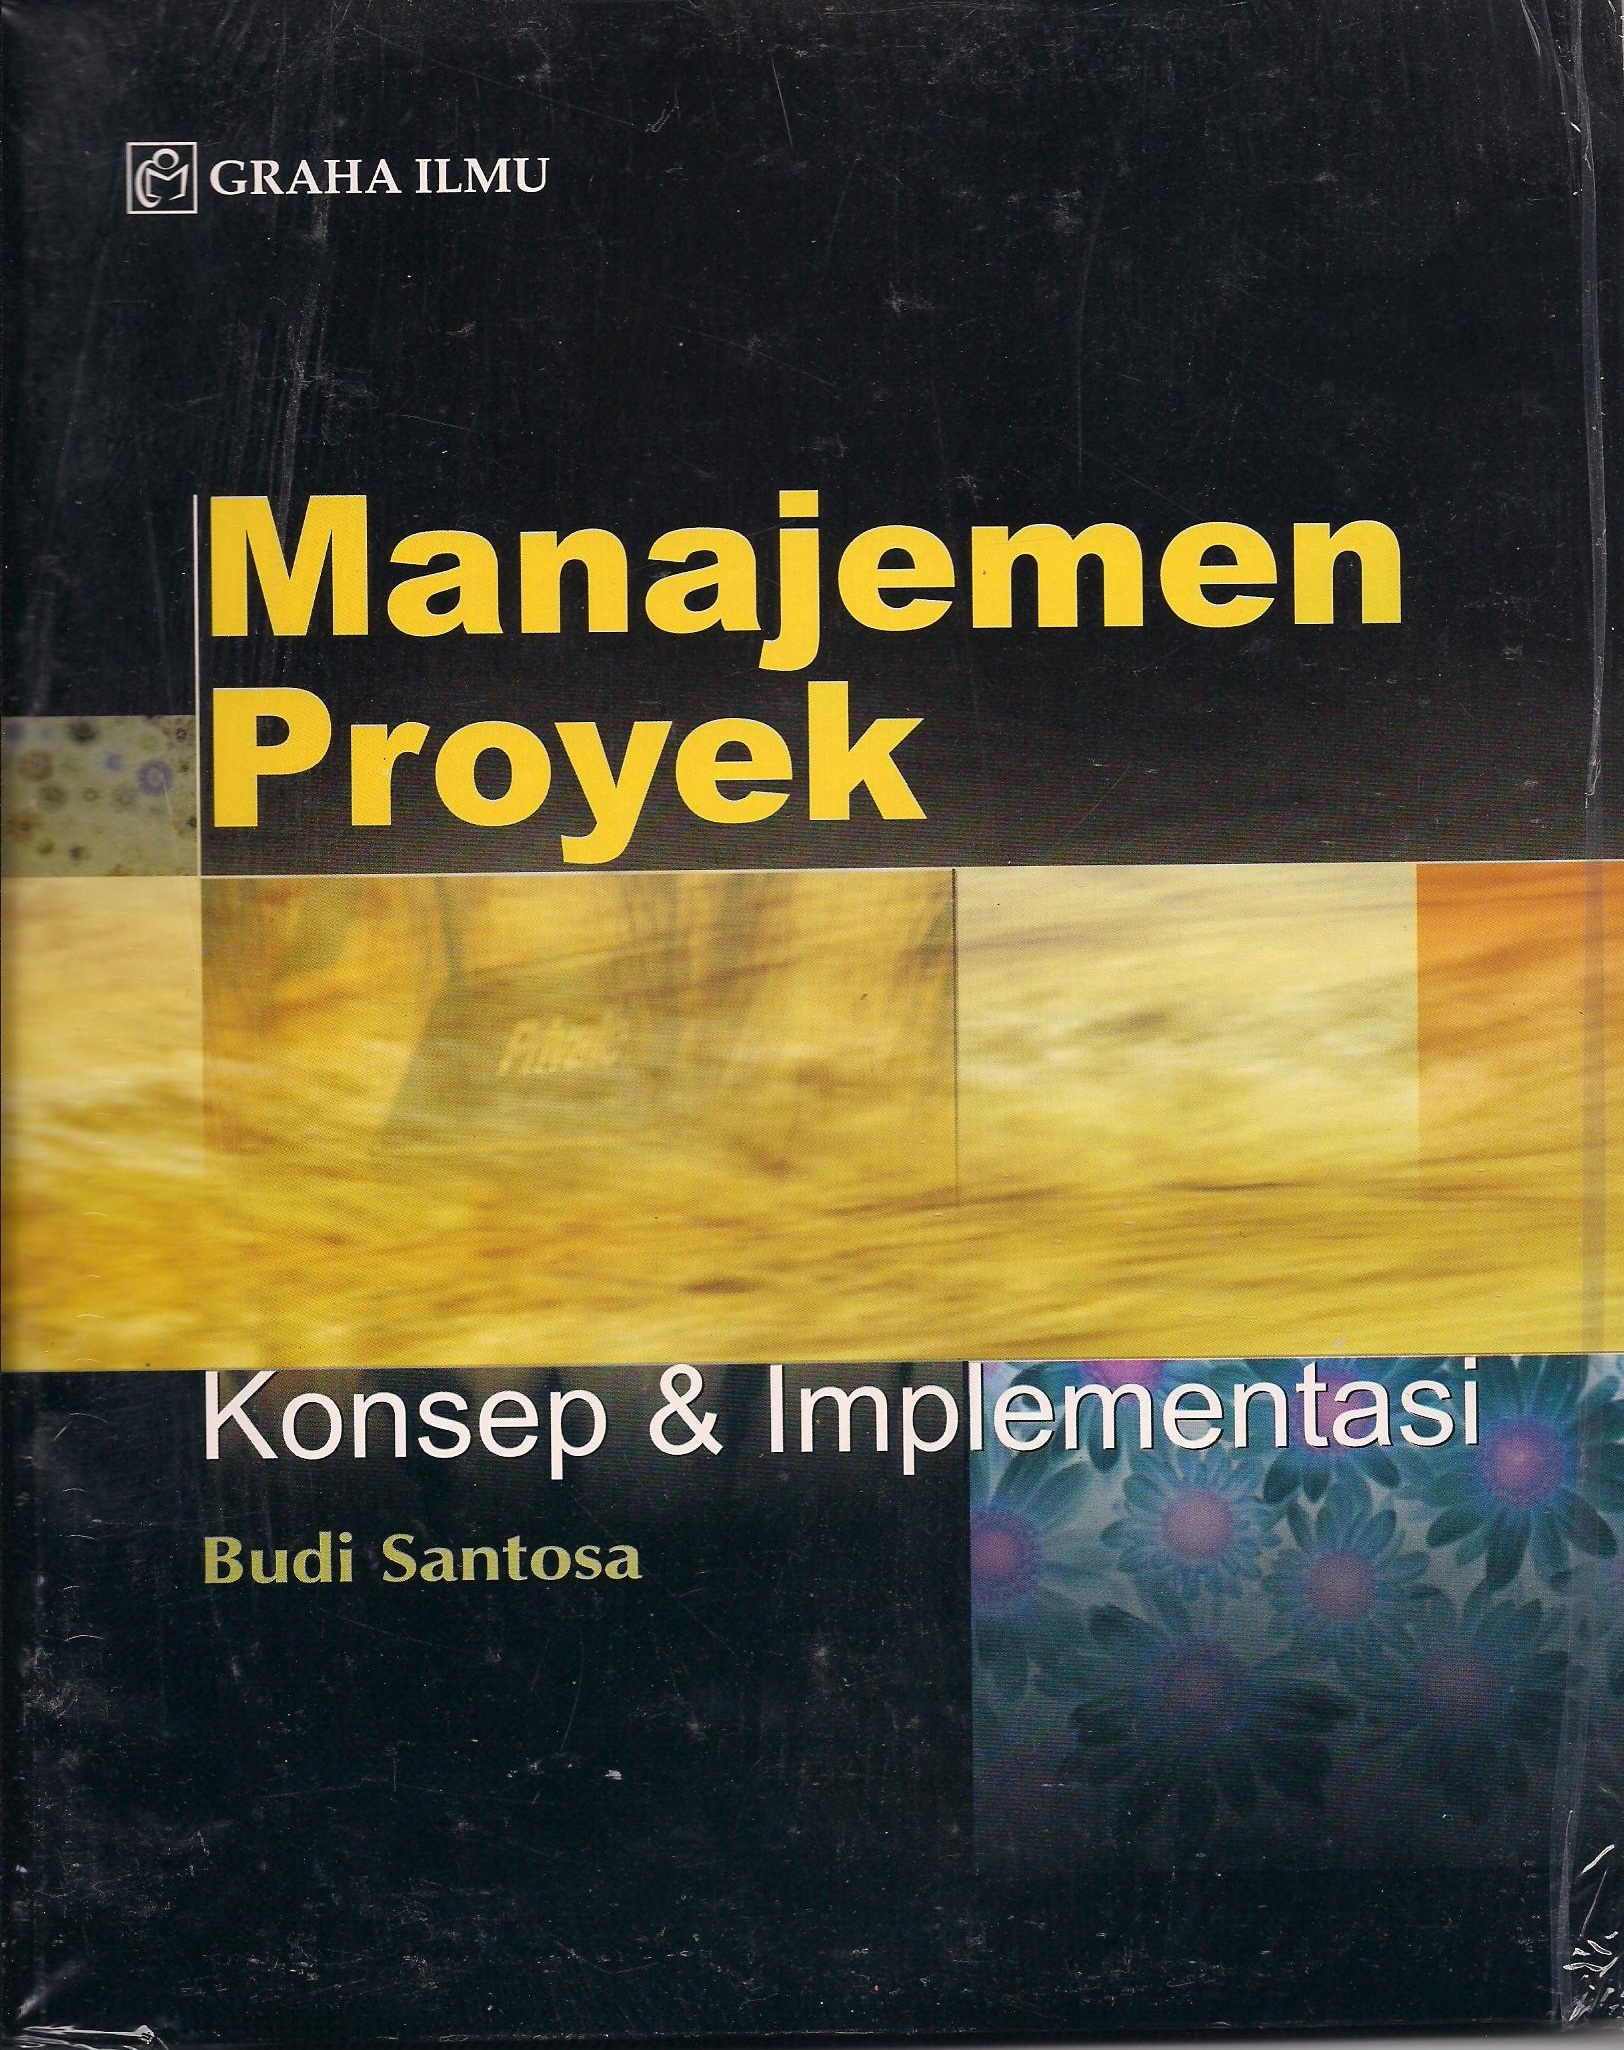 Manajemen proyek konsep & implementasi